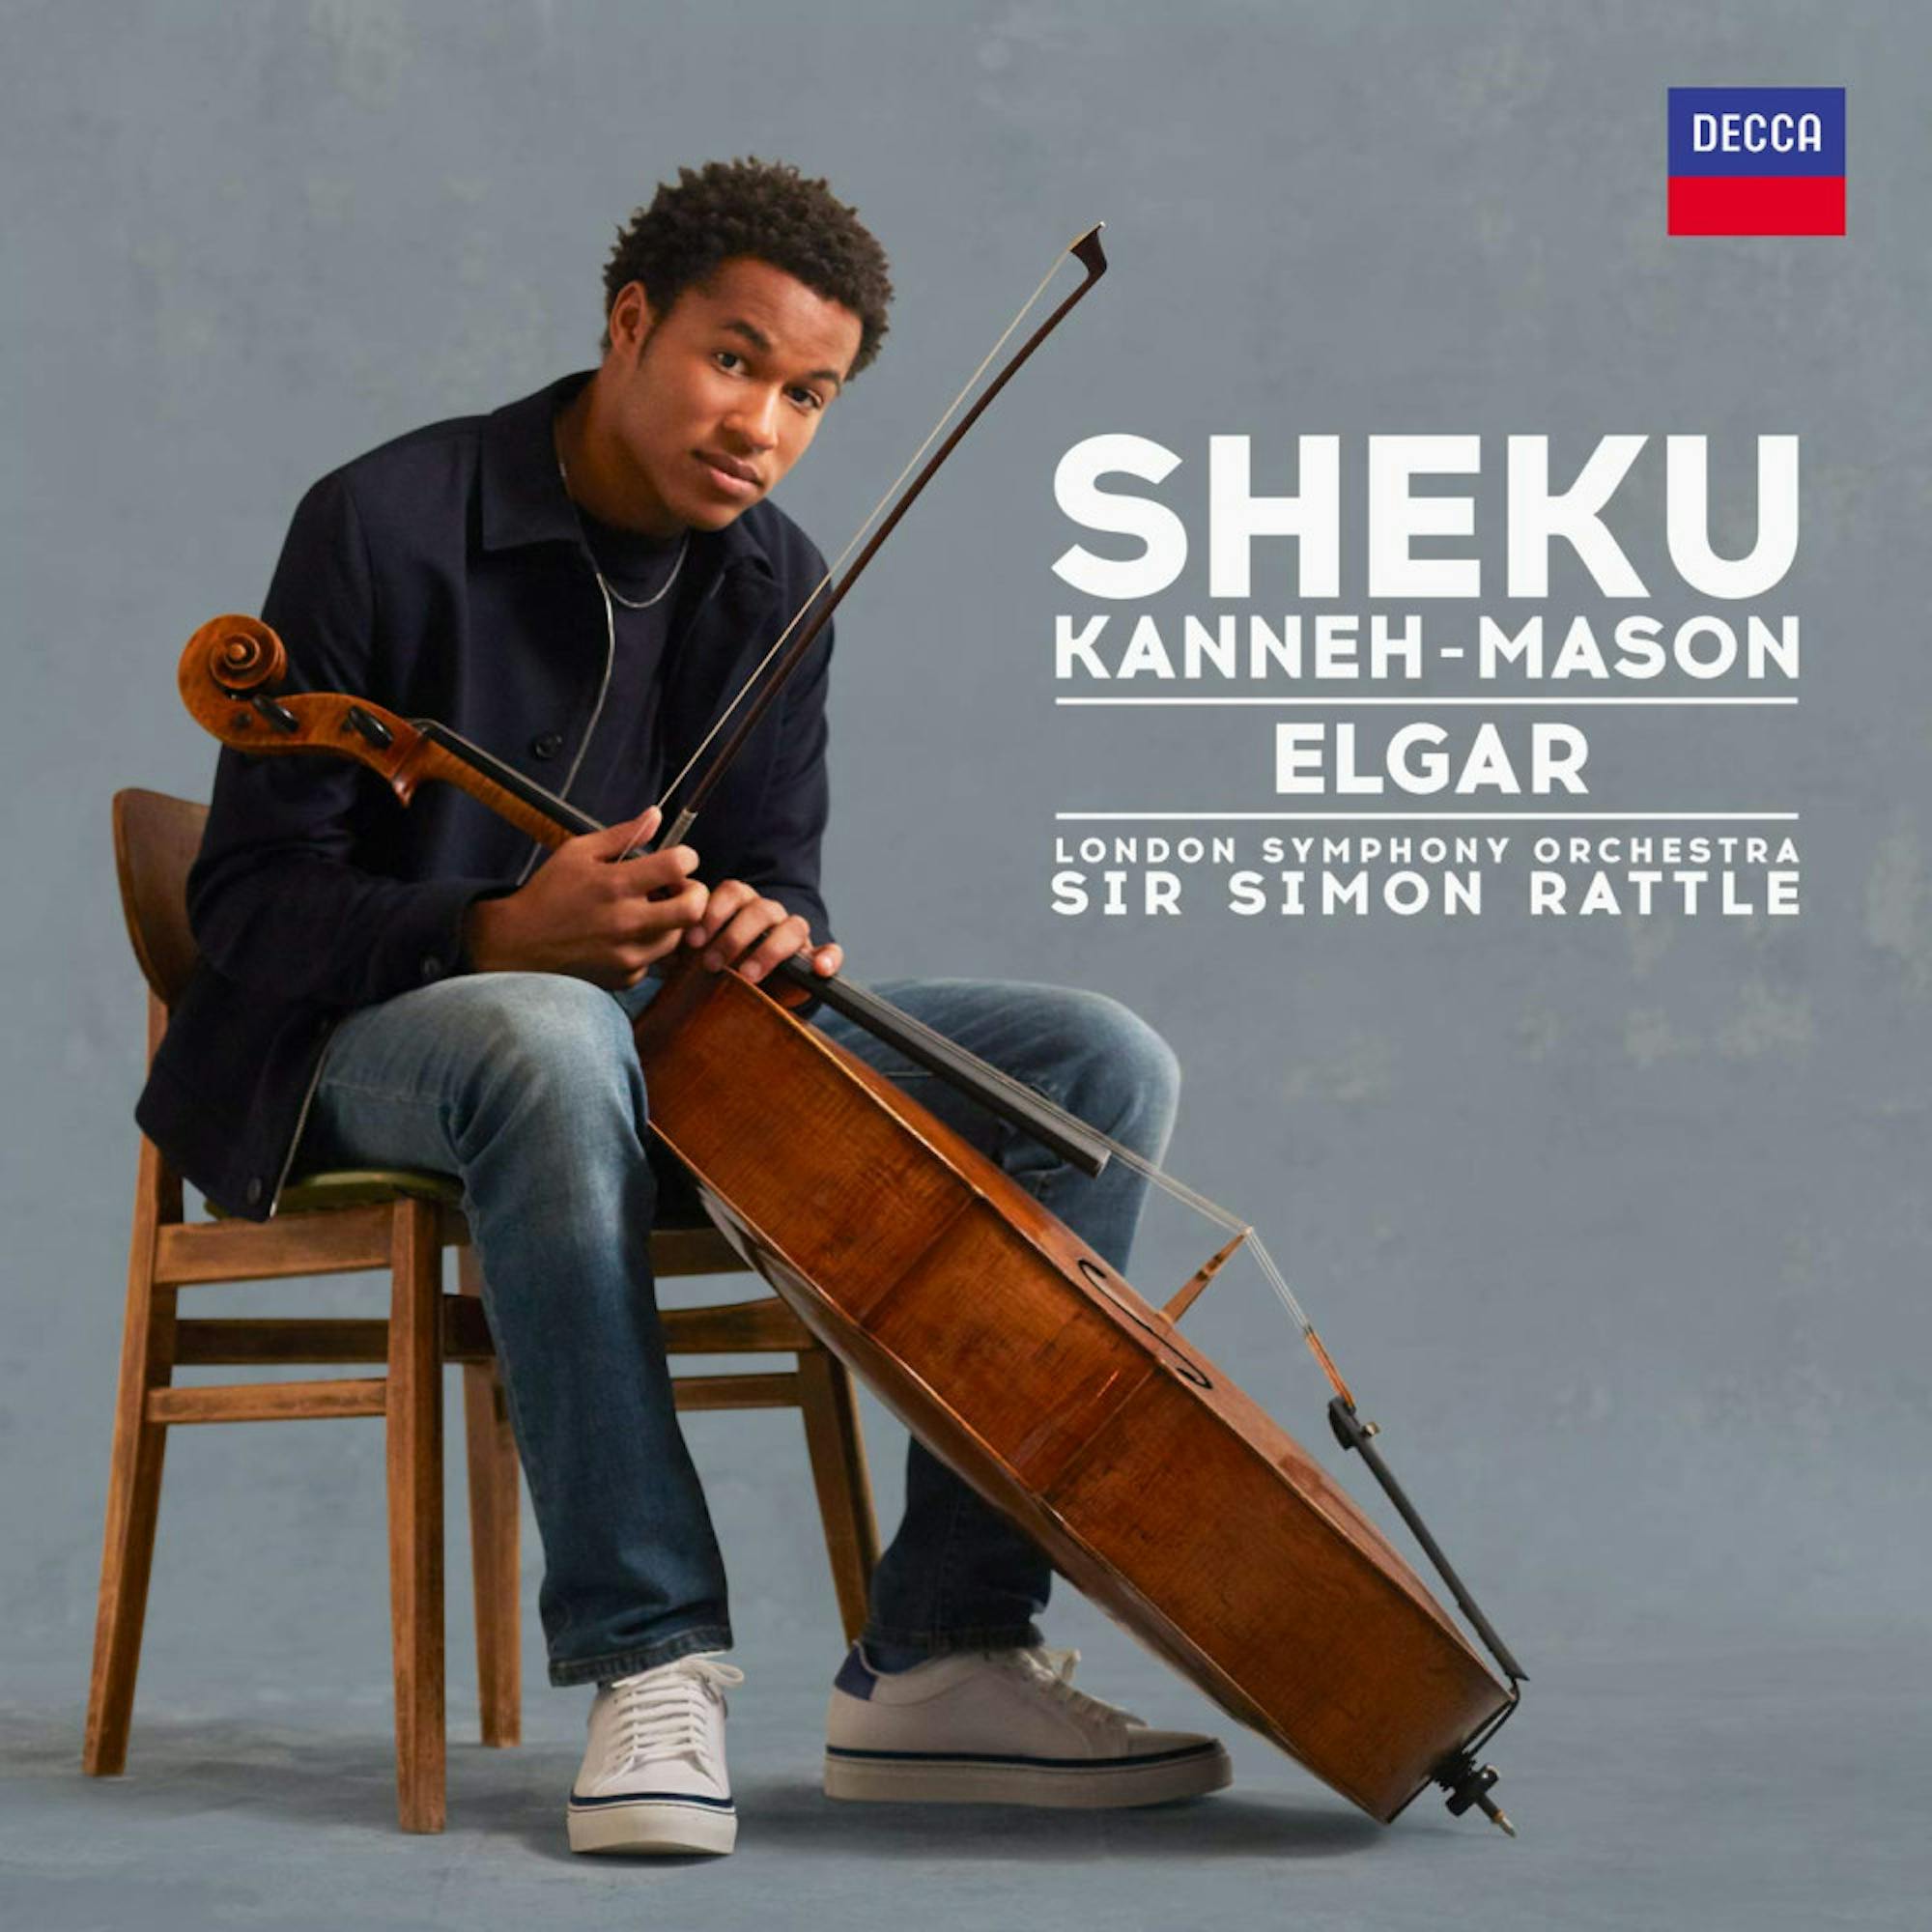 celloShekuKanneh-Mason